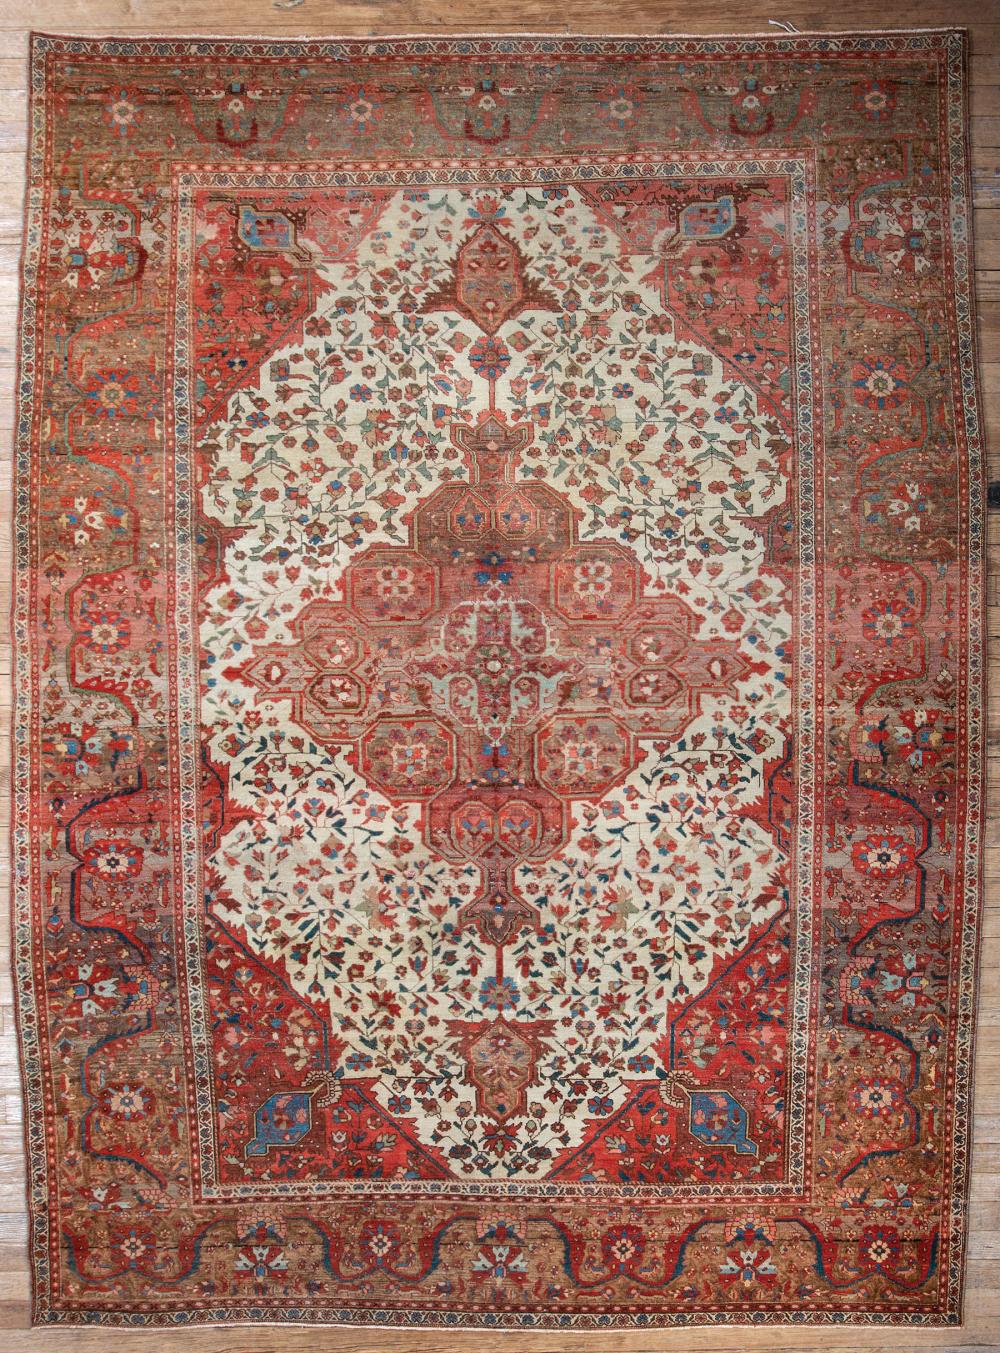 PERSIAN CARPETPersian Carpet , red and